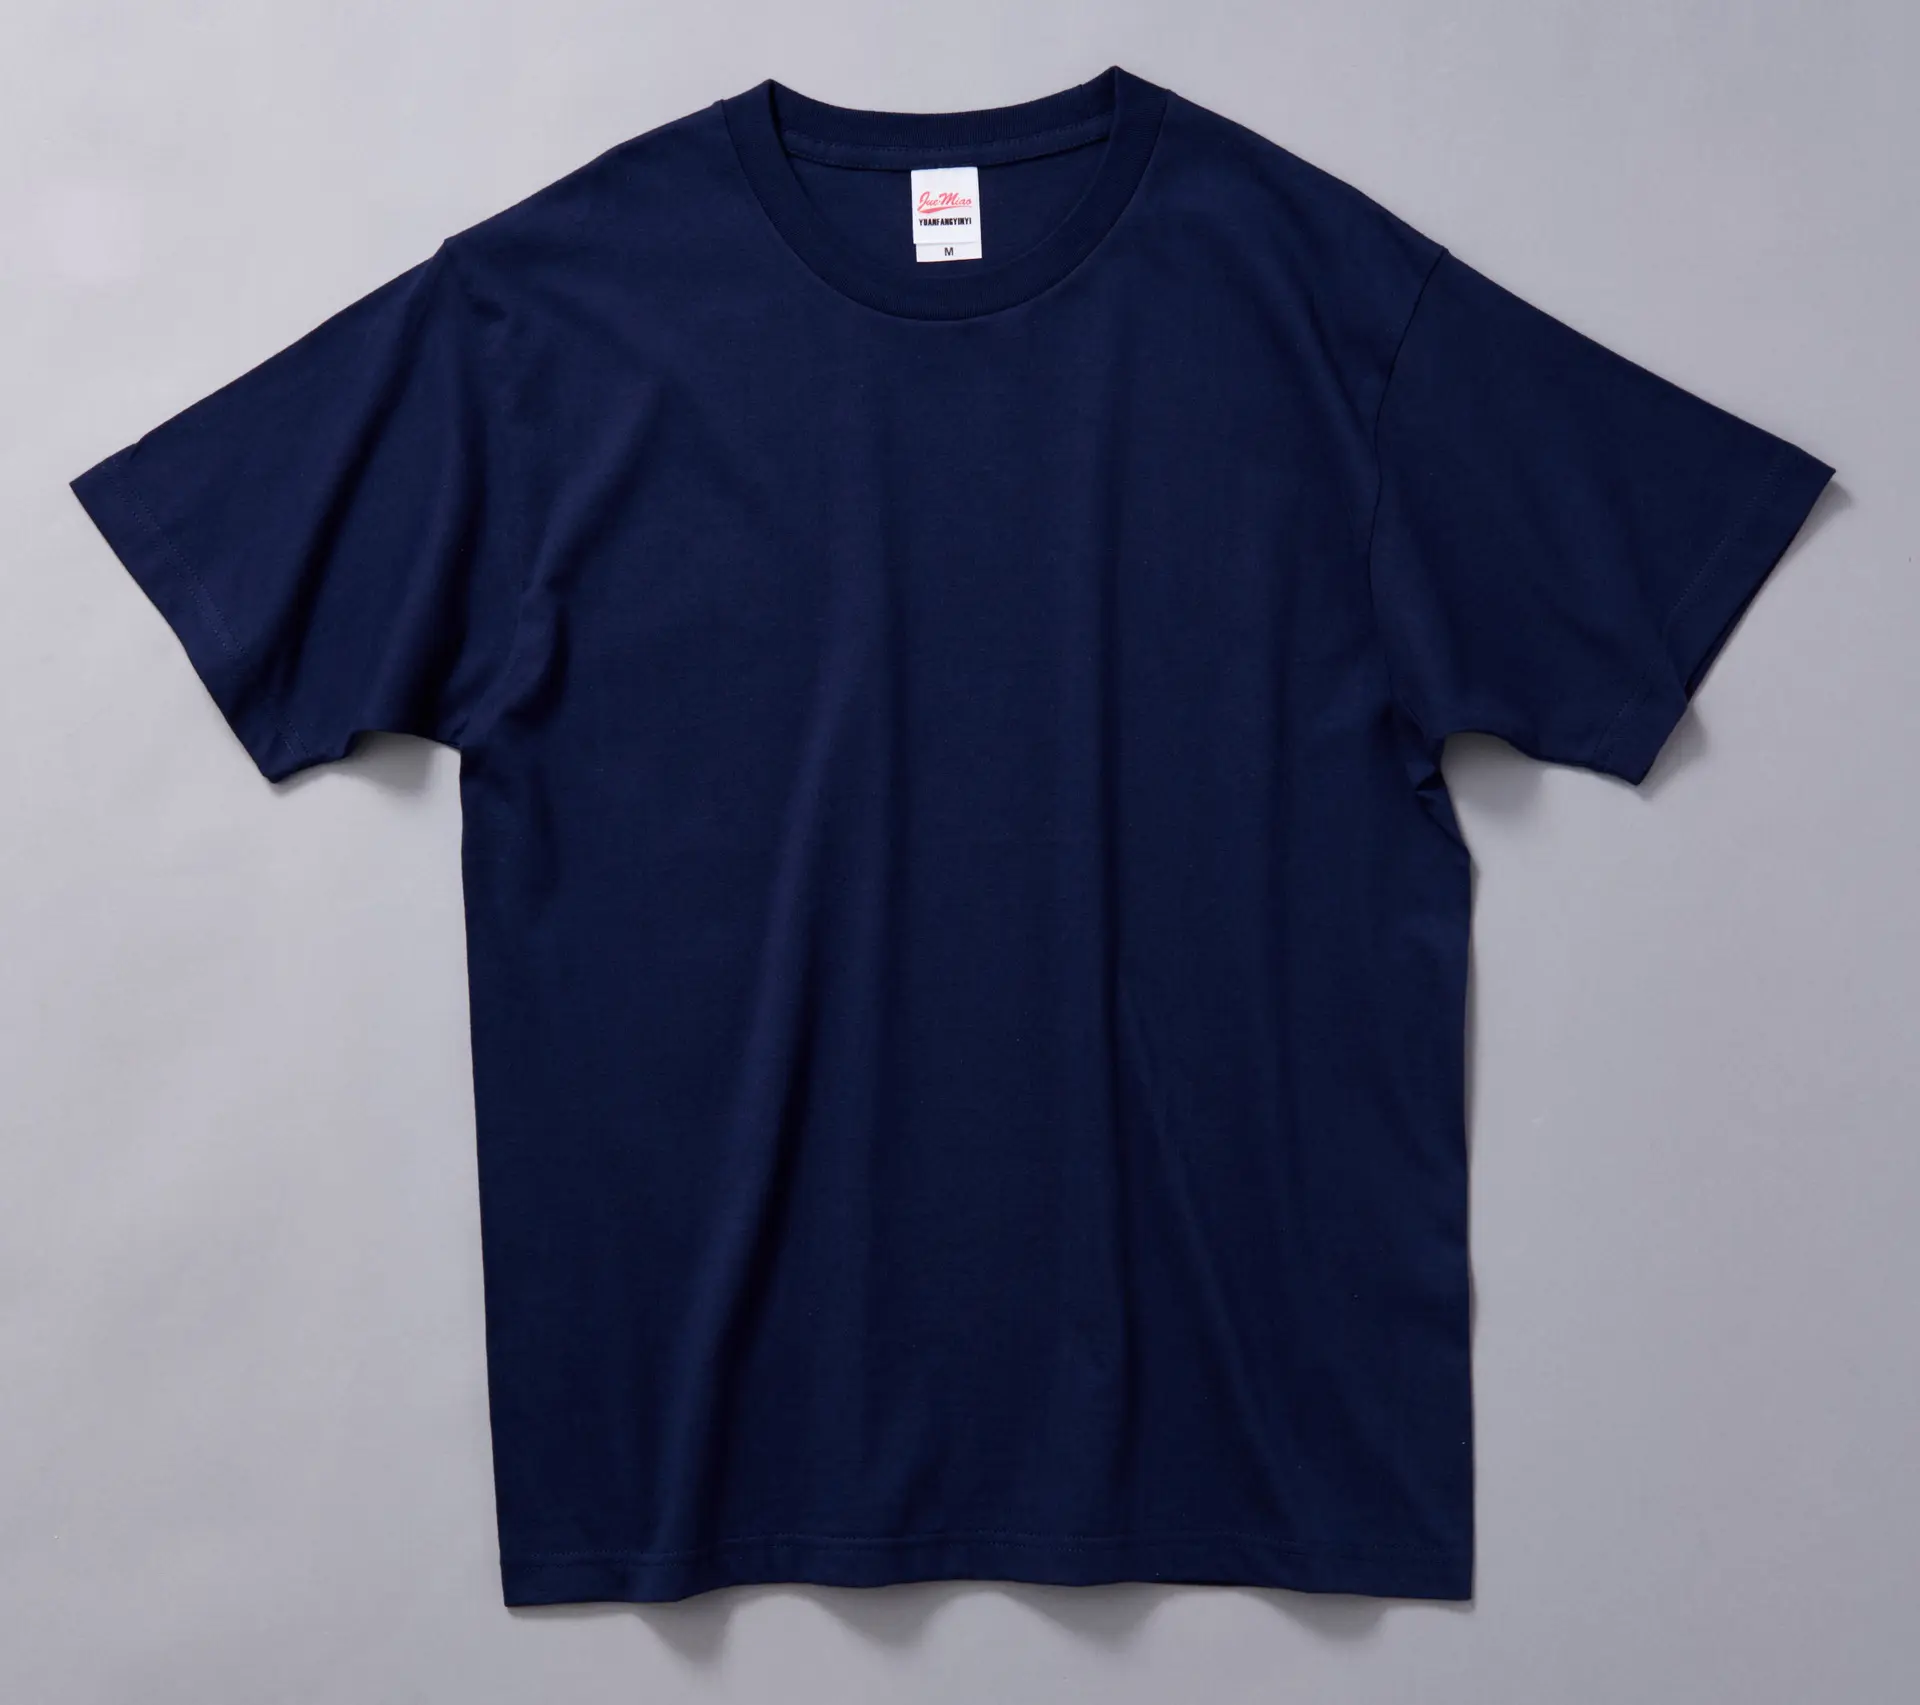 OEM ODM 280g/m² Herren Damen T-Shirt Unisex aus 100% Baumwolle mit individuellem Siebdruck für Männer und Frauen